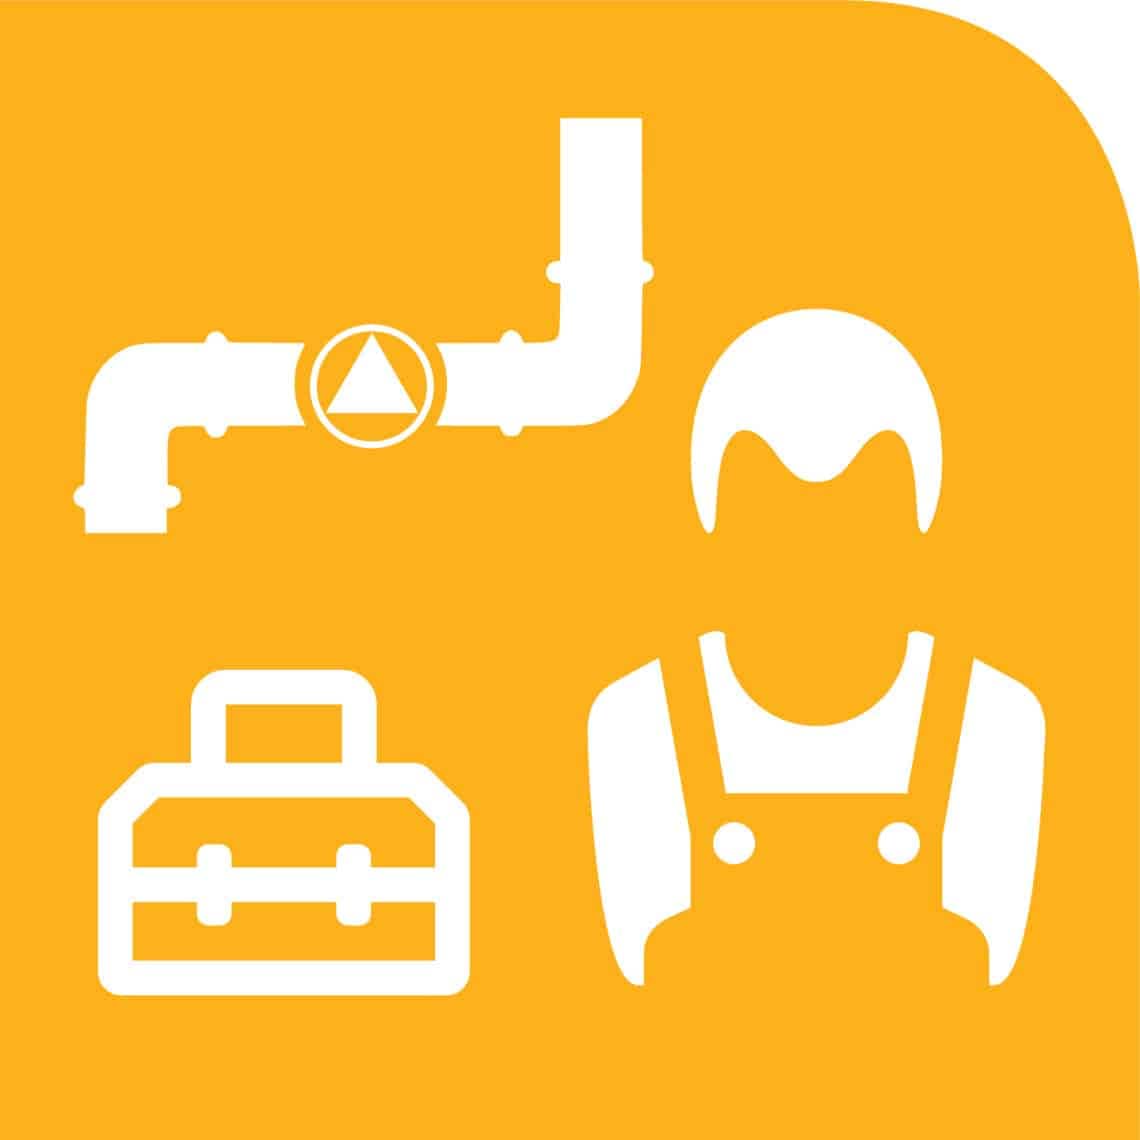 Rohrleitung, Werkzeugkoffer und Techniker/Berater auf orangem Hintergrund